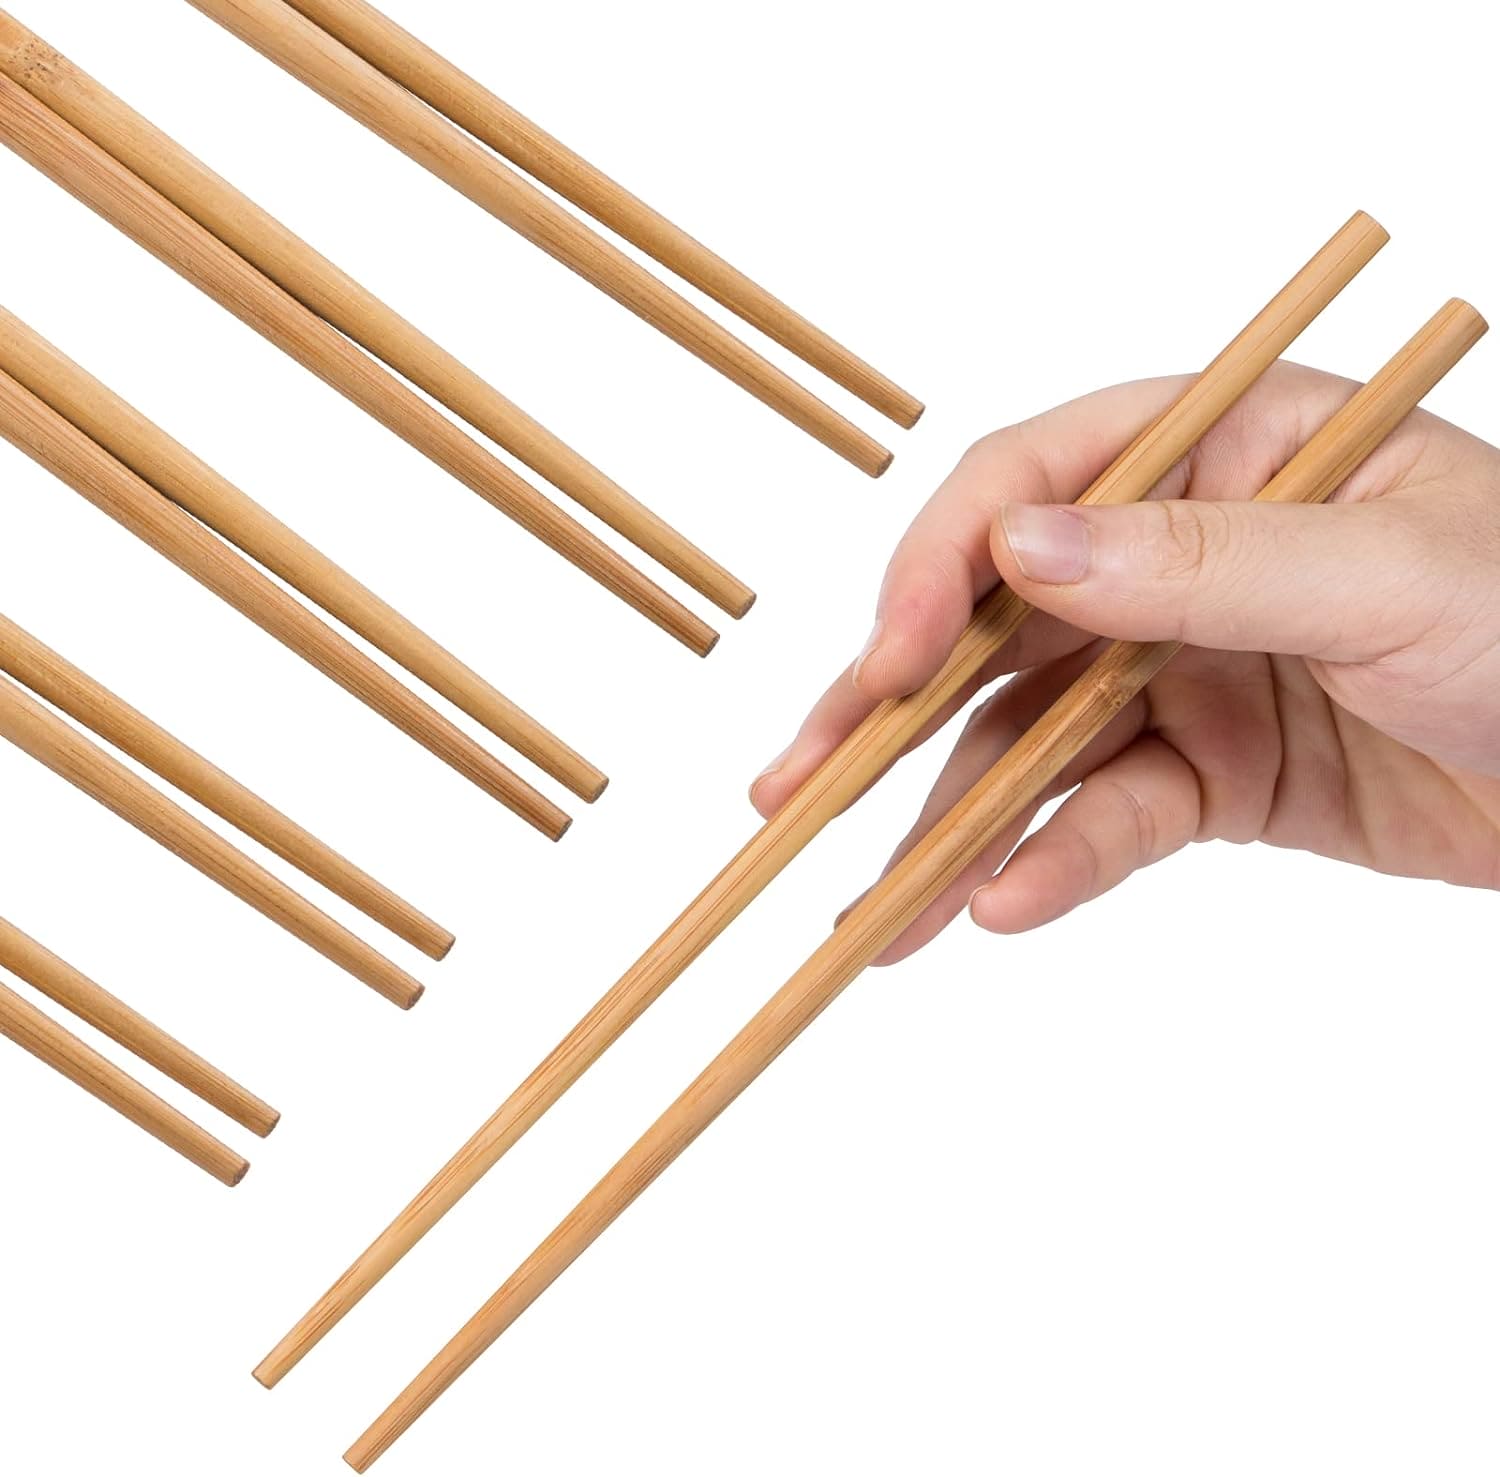 Set Of 10 Bamboo Sticks, Wooden Bamboo Chopsticks, Reusable Japanese Chopsticks, Non Slip Food Chop Sticks, Natural Kitchen Chopsticks, Household Bamboo Chopsticks, Kitchen Restaurant Home Tableware